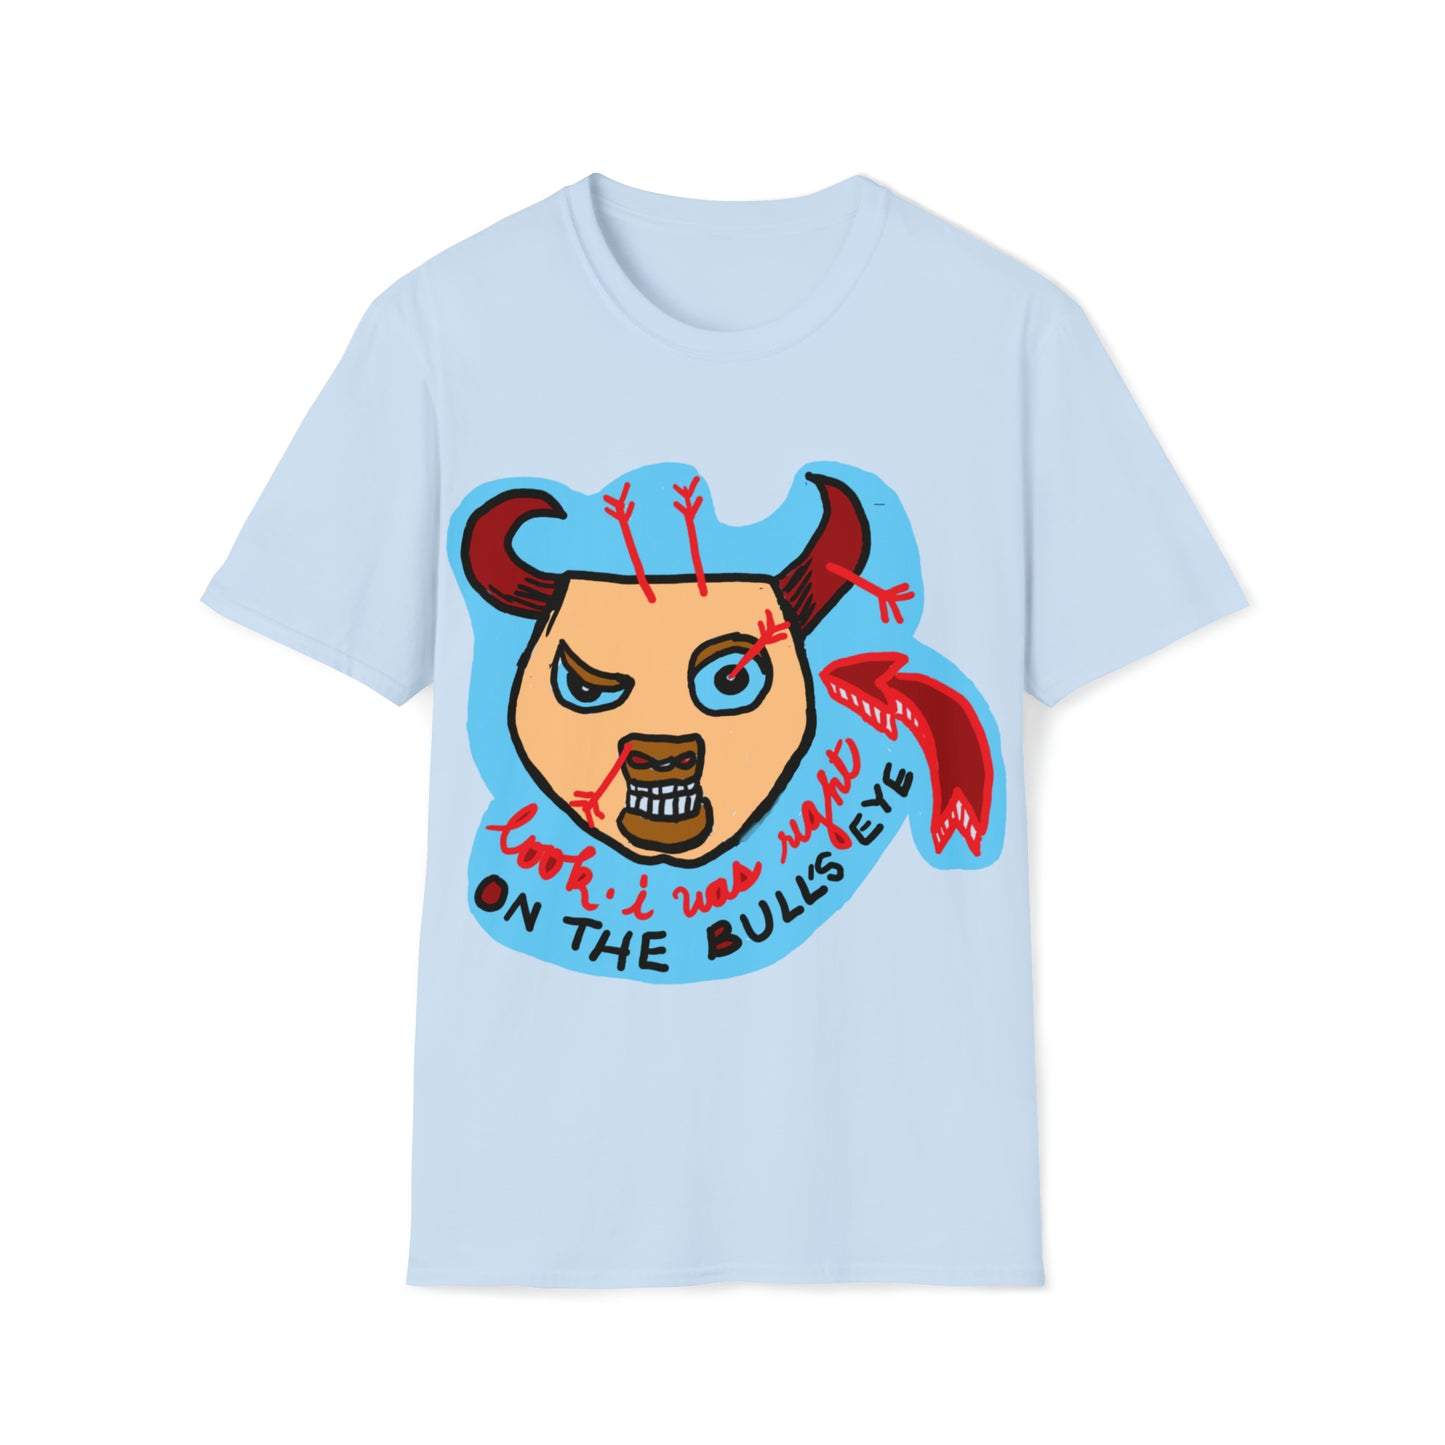 I got the Bullseye T-Shirt